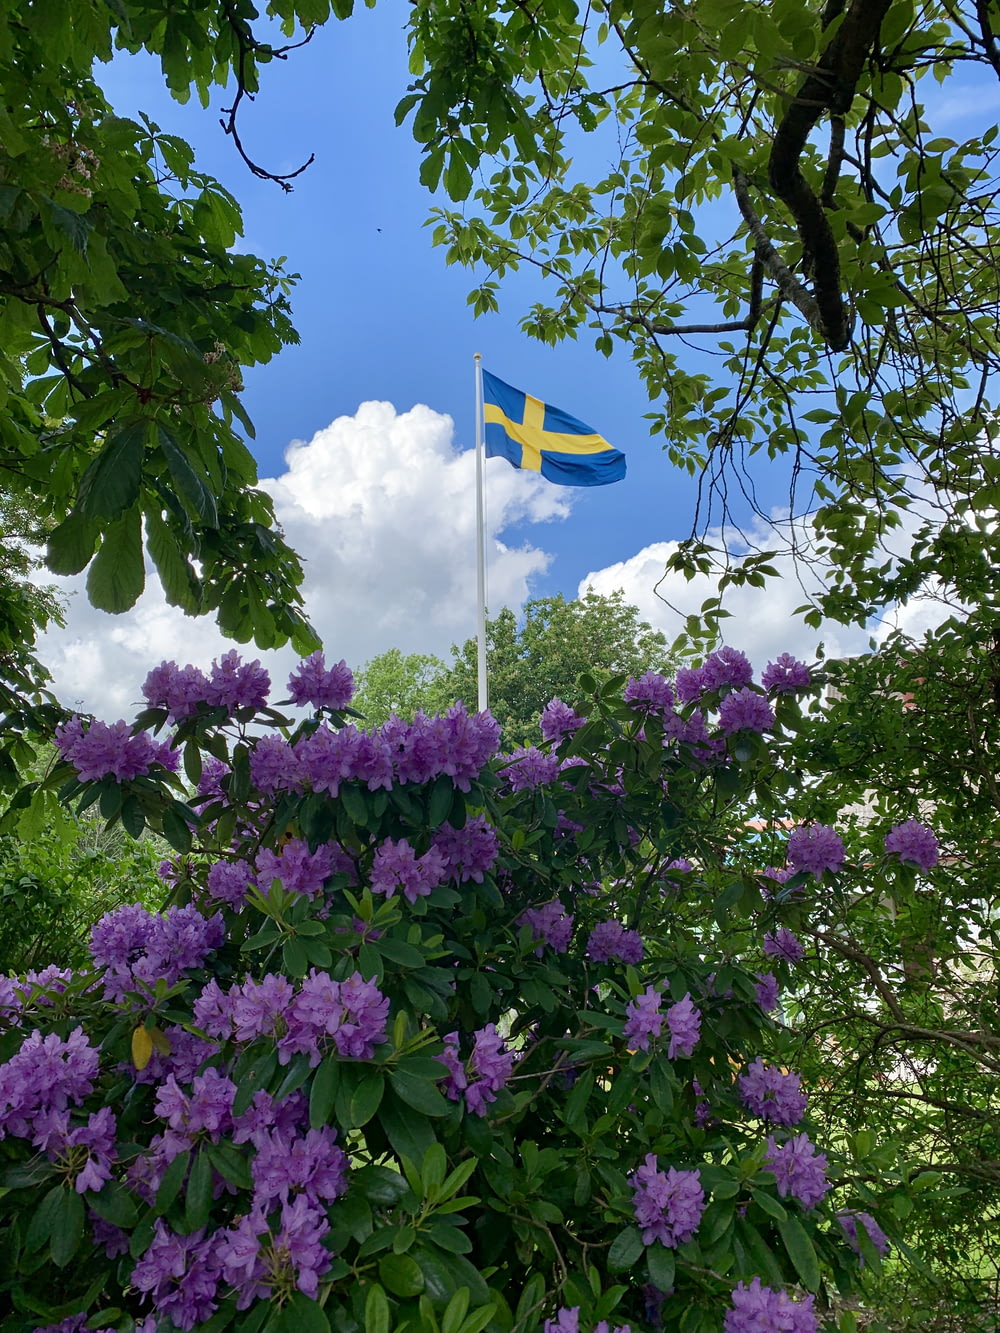 bandeira azul com cruz amarela no meio perto de arbustos de flores roxas